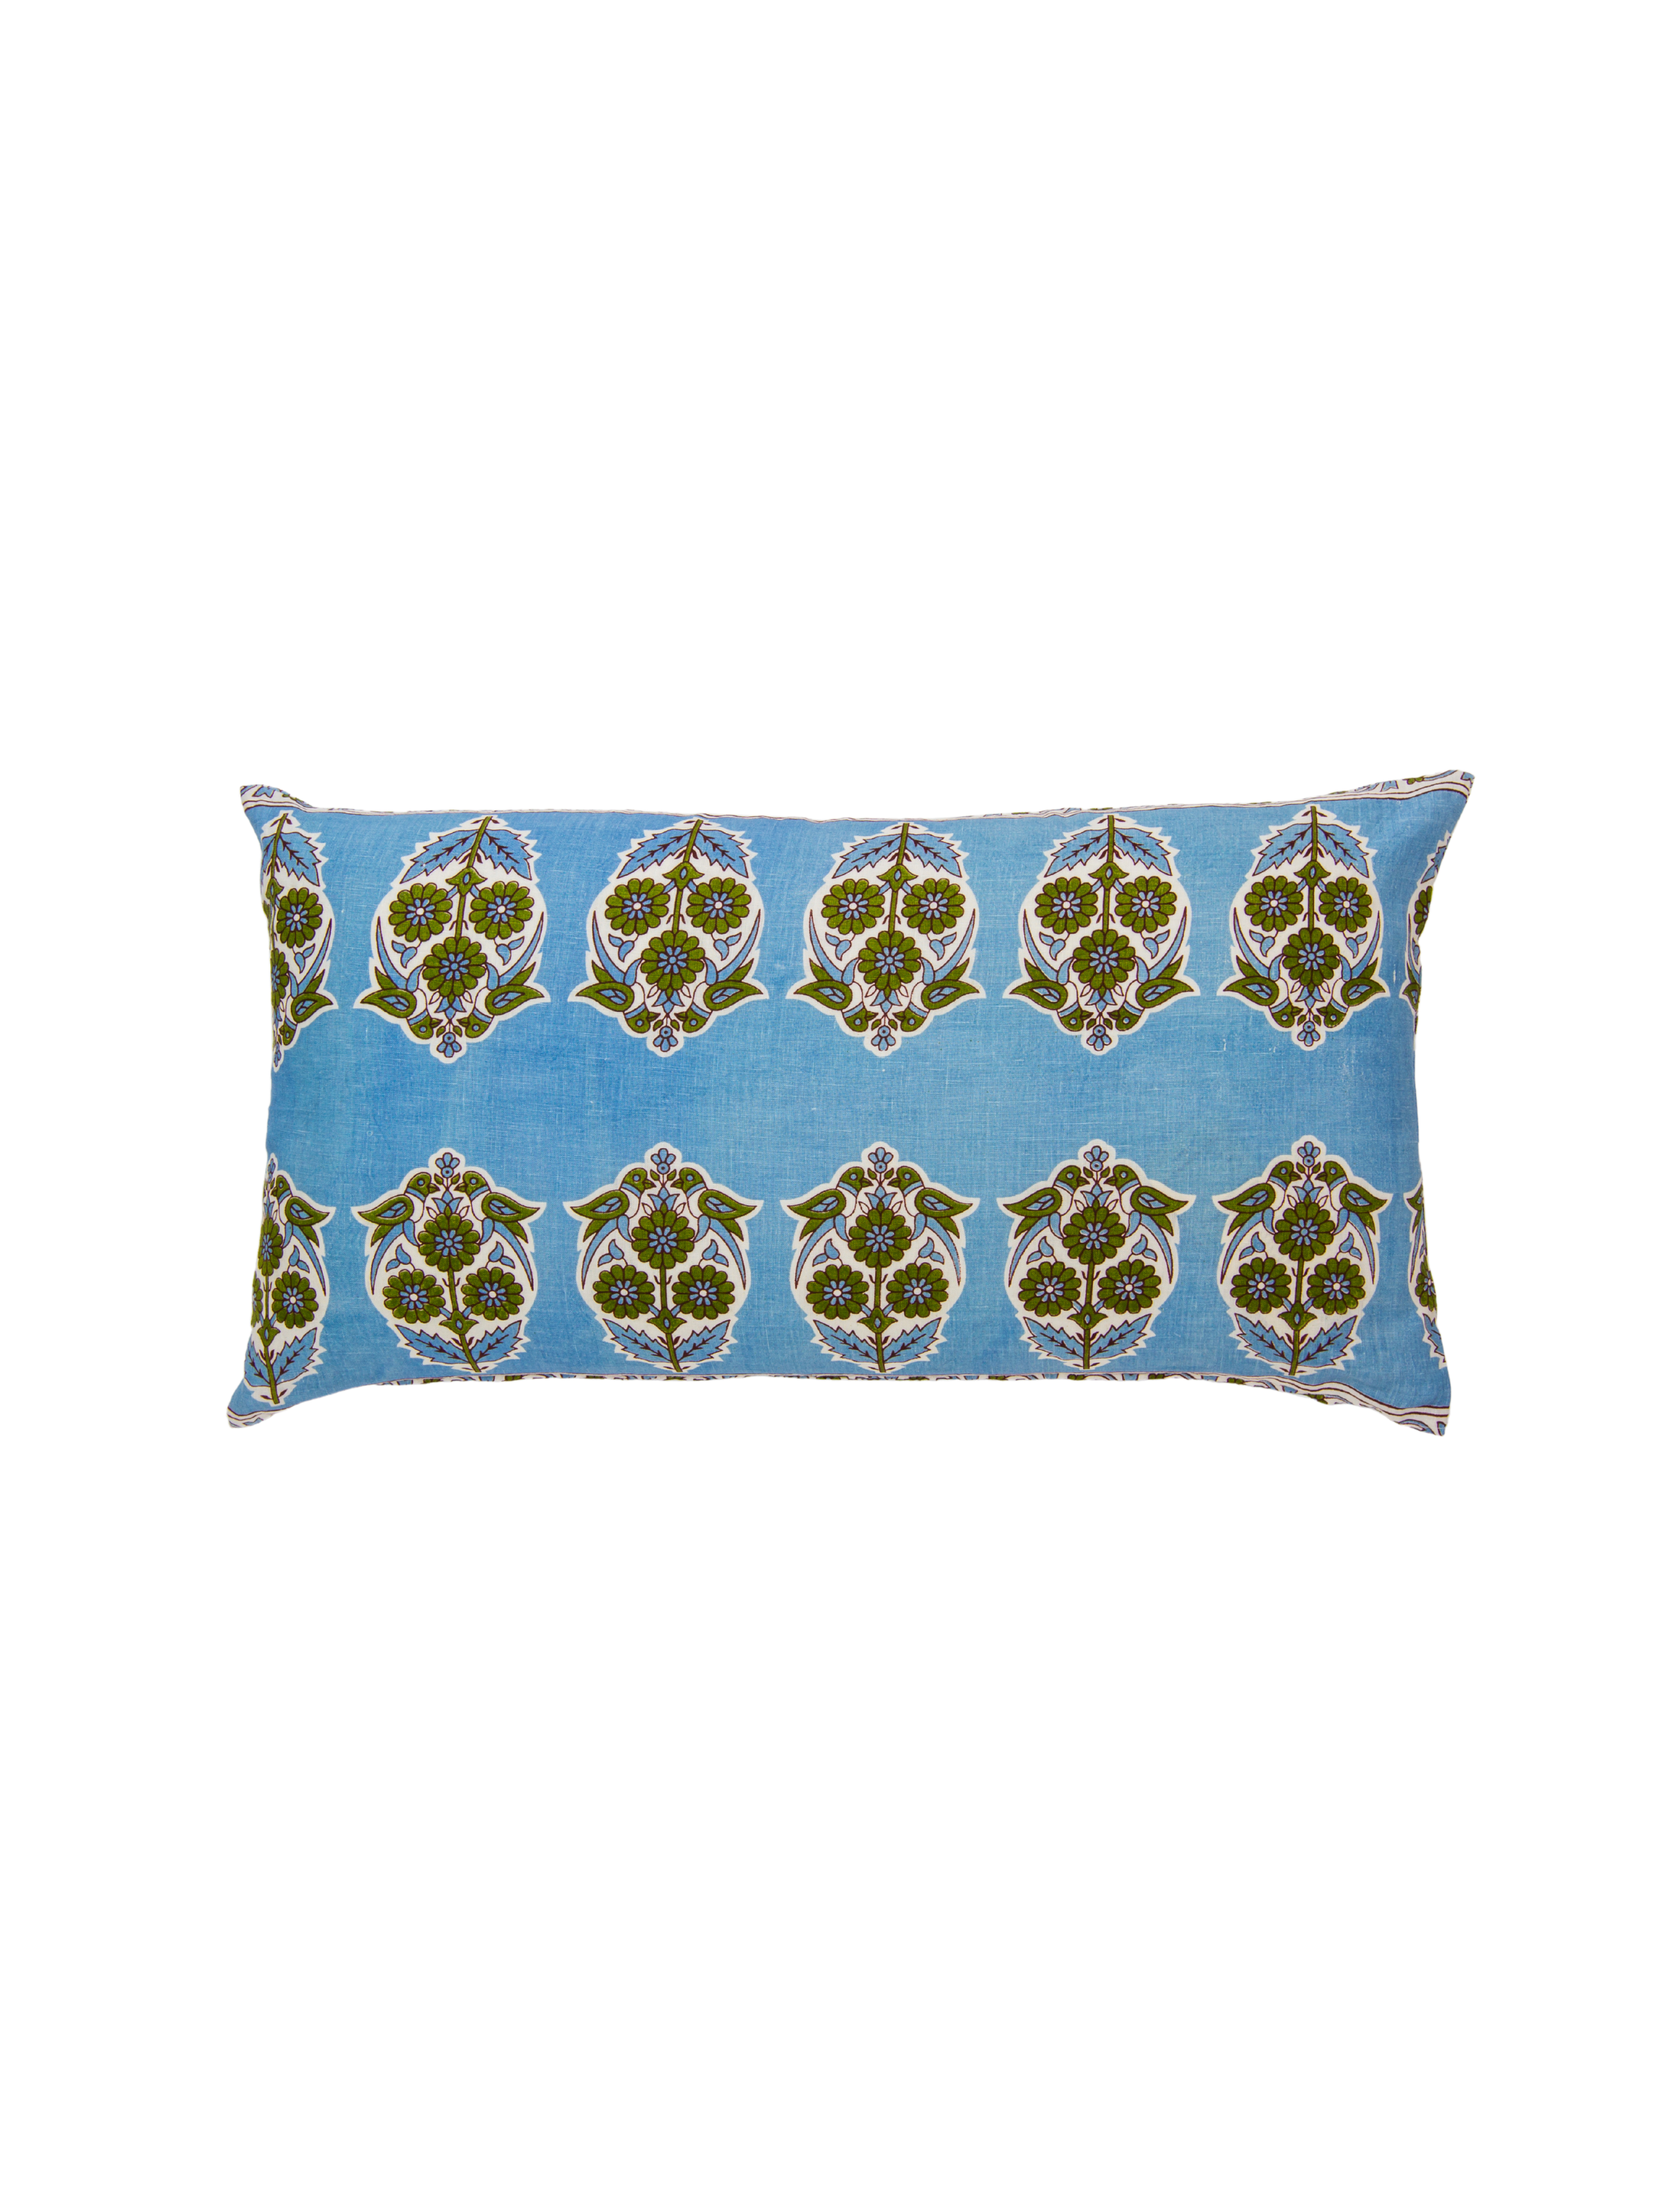 Parakeets Blue/Green Lumbar Pillow Cover